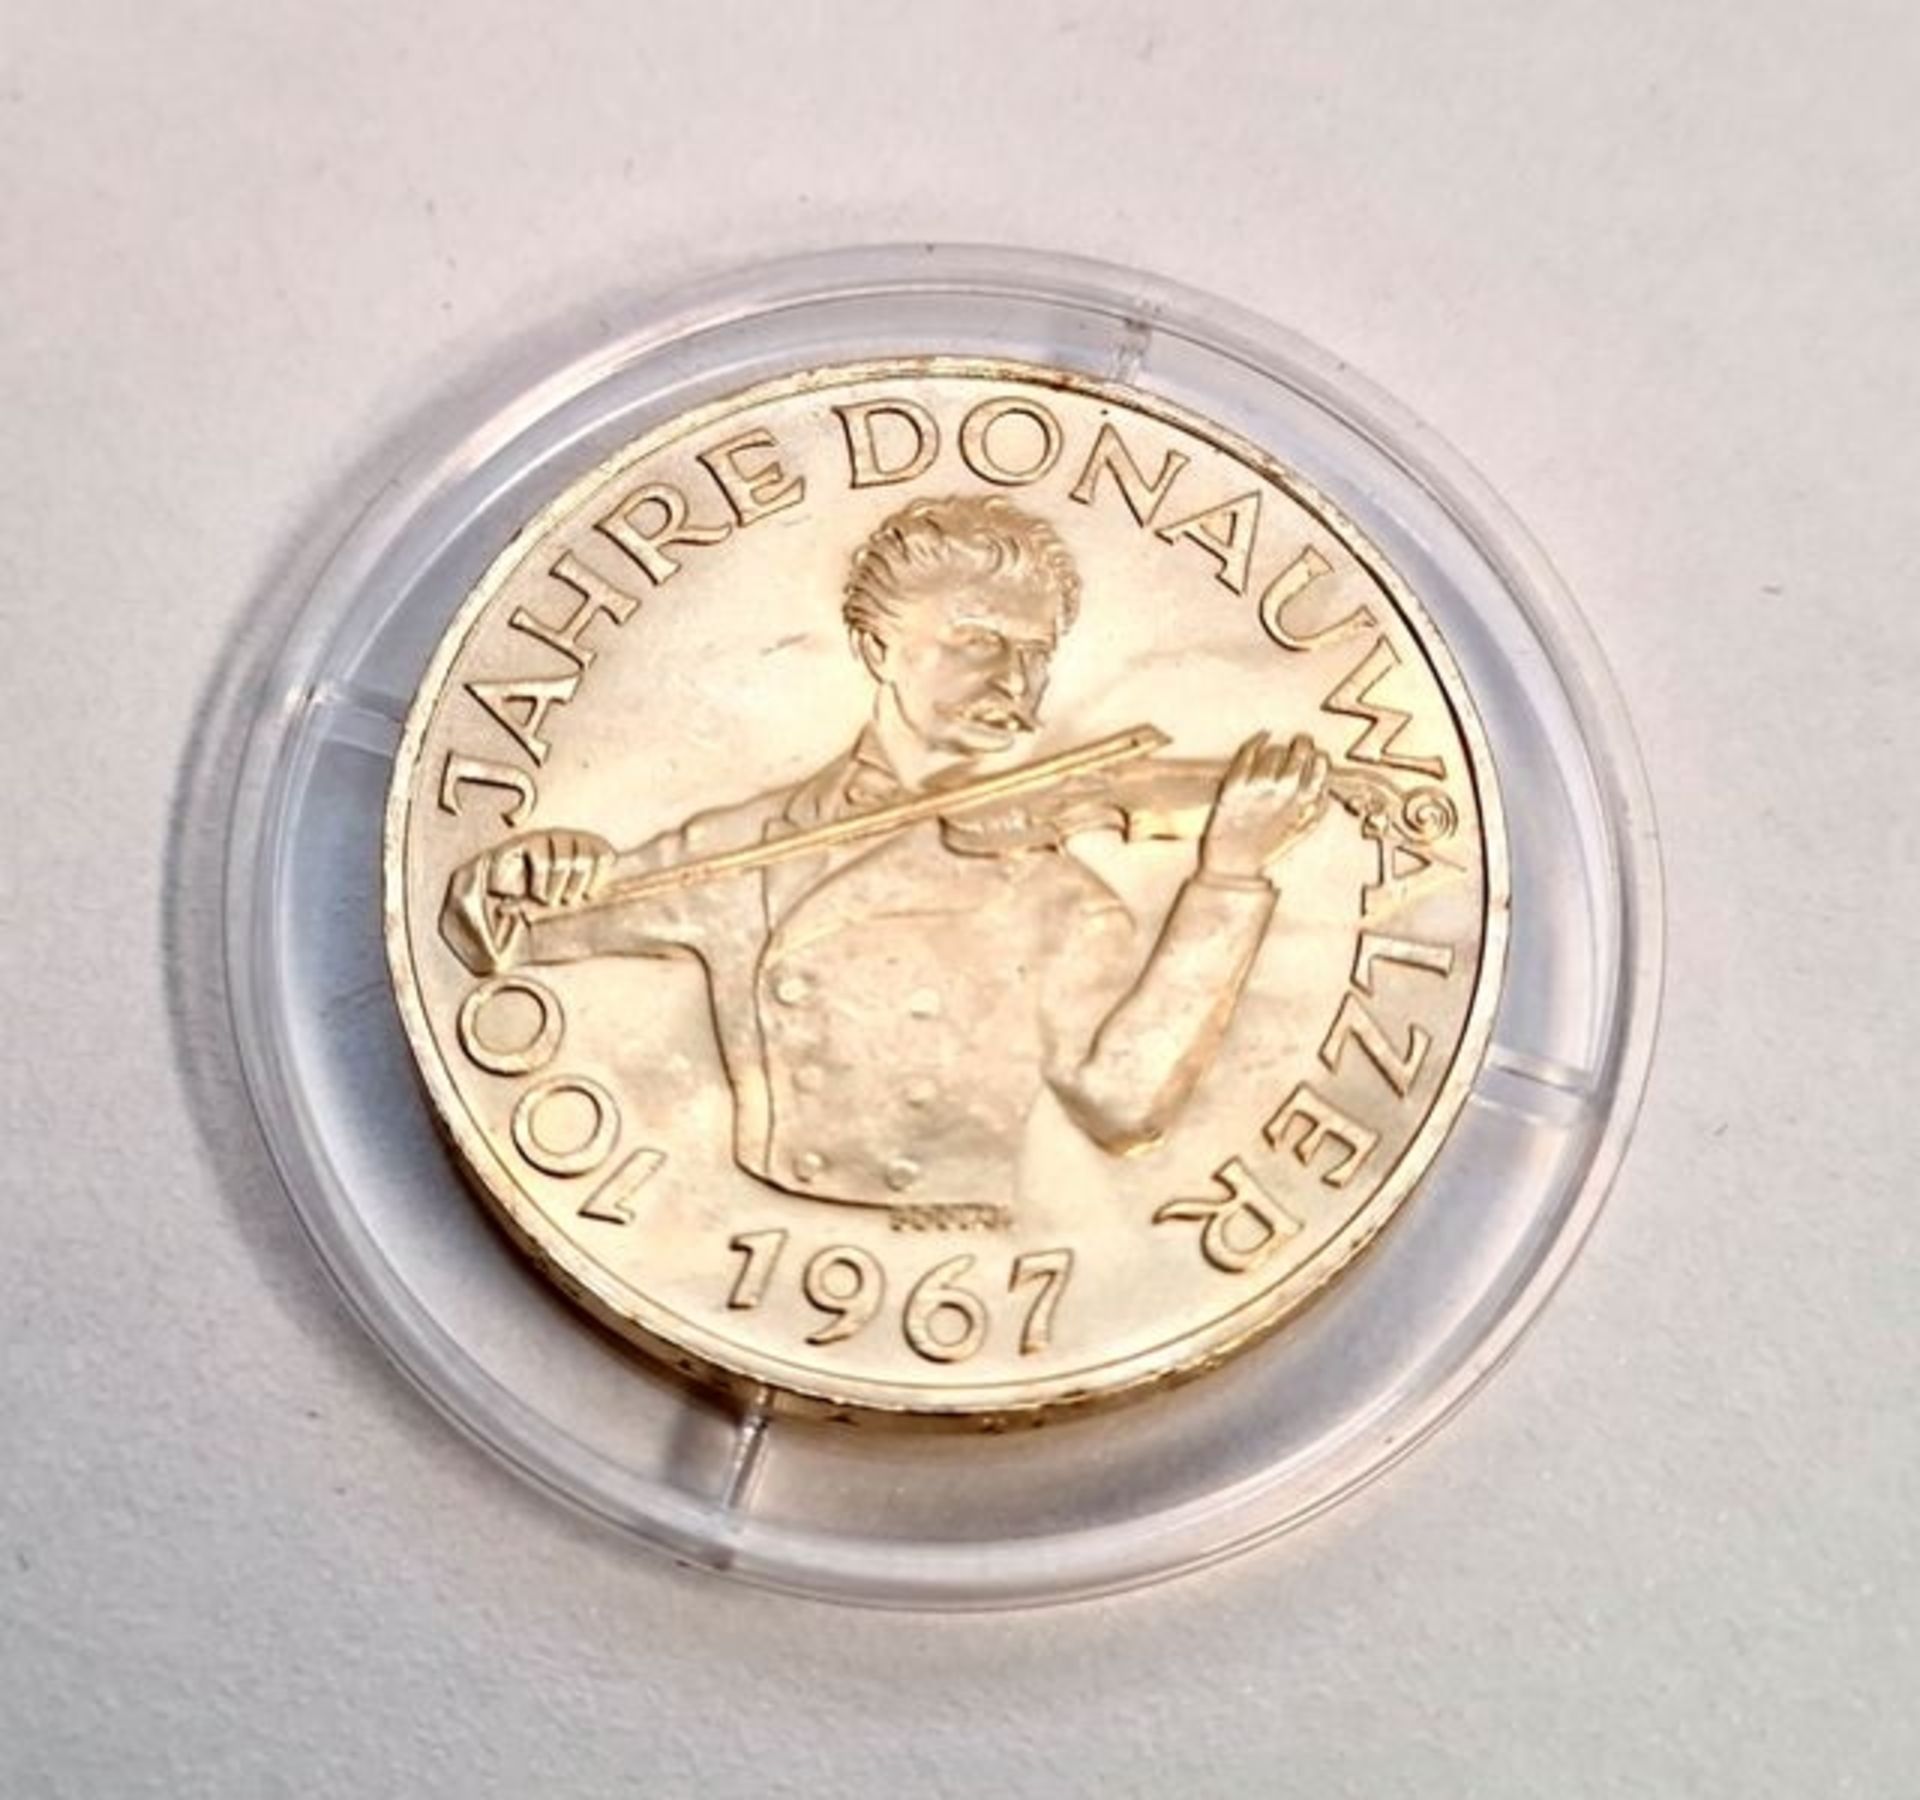 50 Schilling 1967 , 100 Jahre Donauwalzer , Silber 900 - vergoldet, Gewicht: 20 Gramm, Durchmes